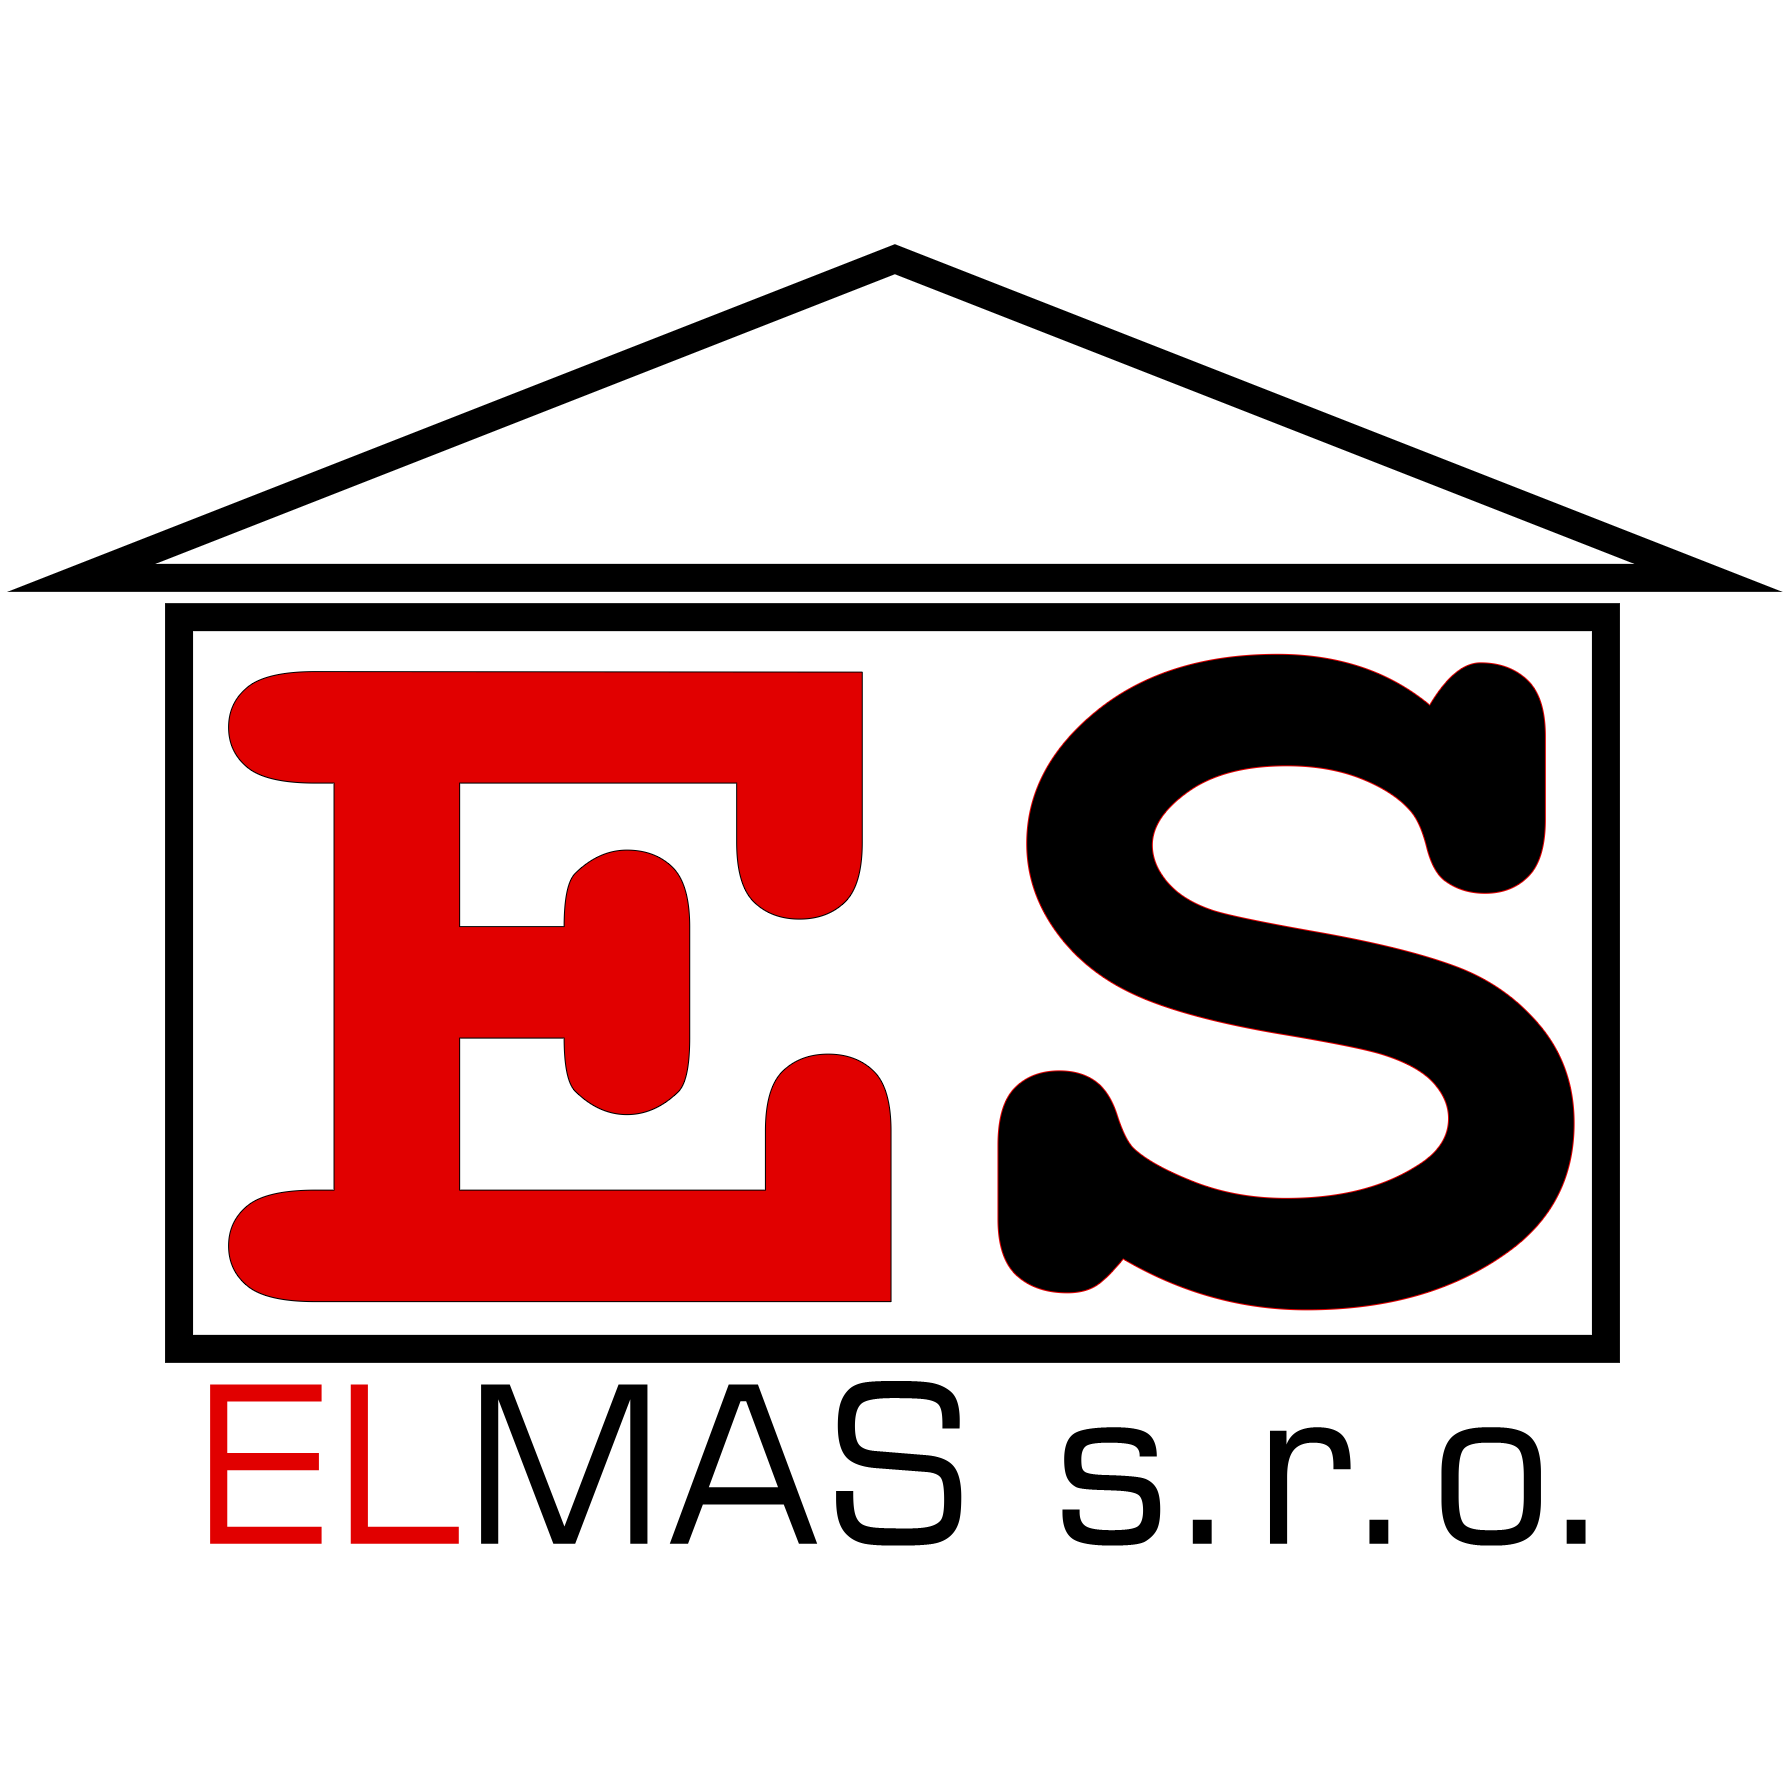 ELMAS, s. r. o.